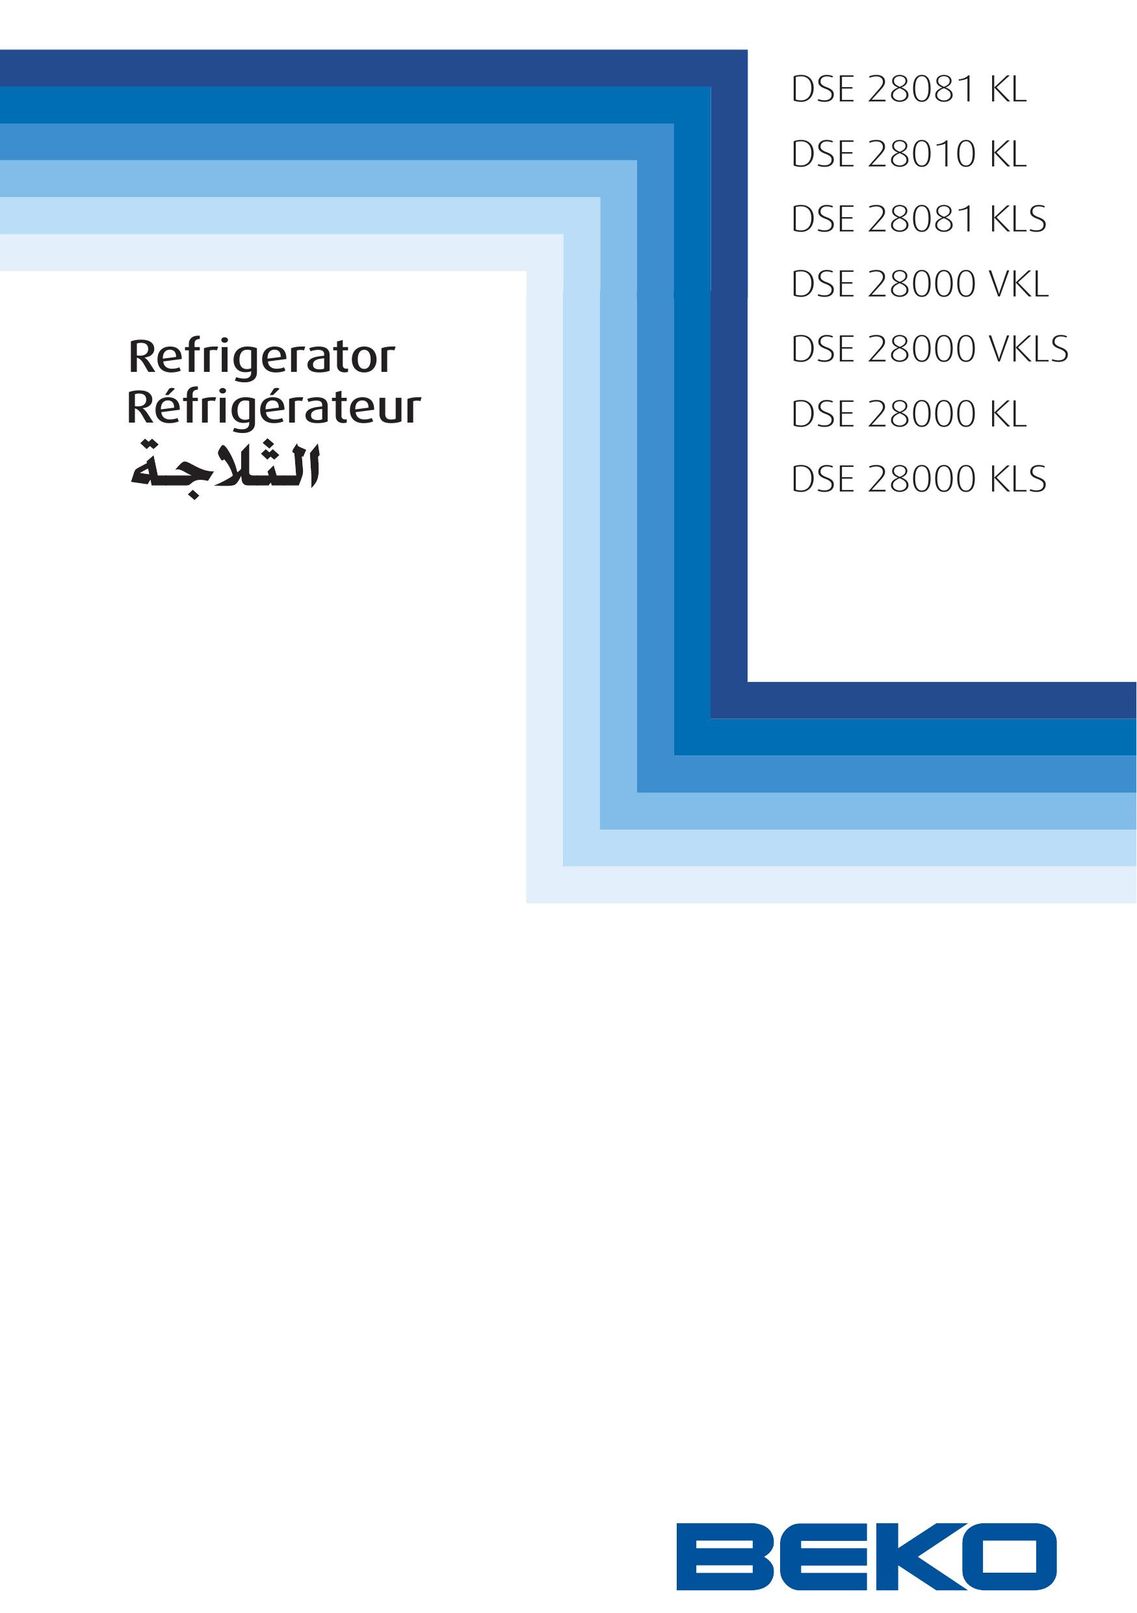 Beko DSE 28081 KL Freezer User Manual